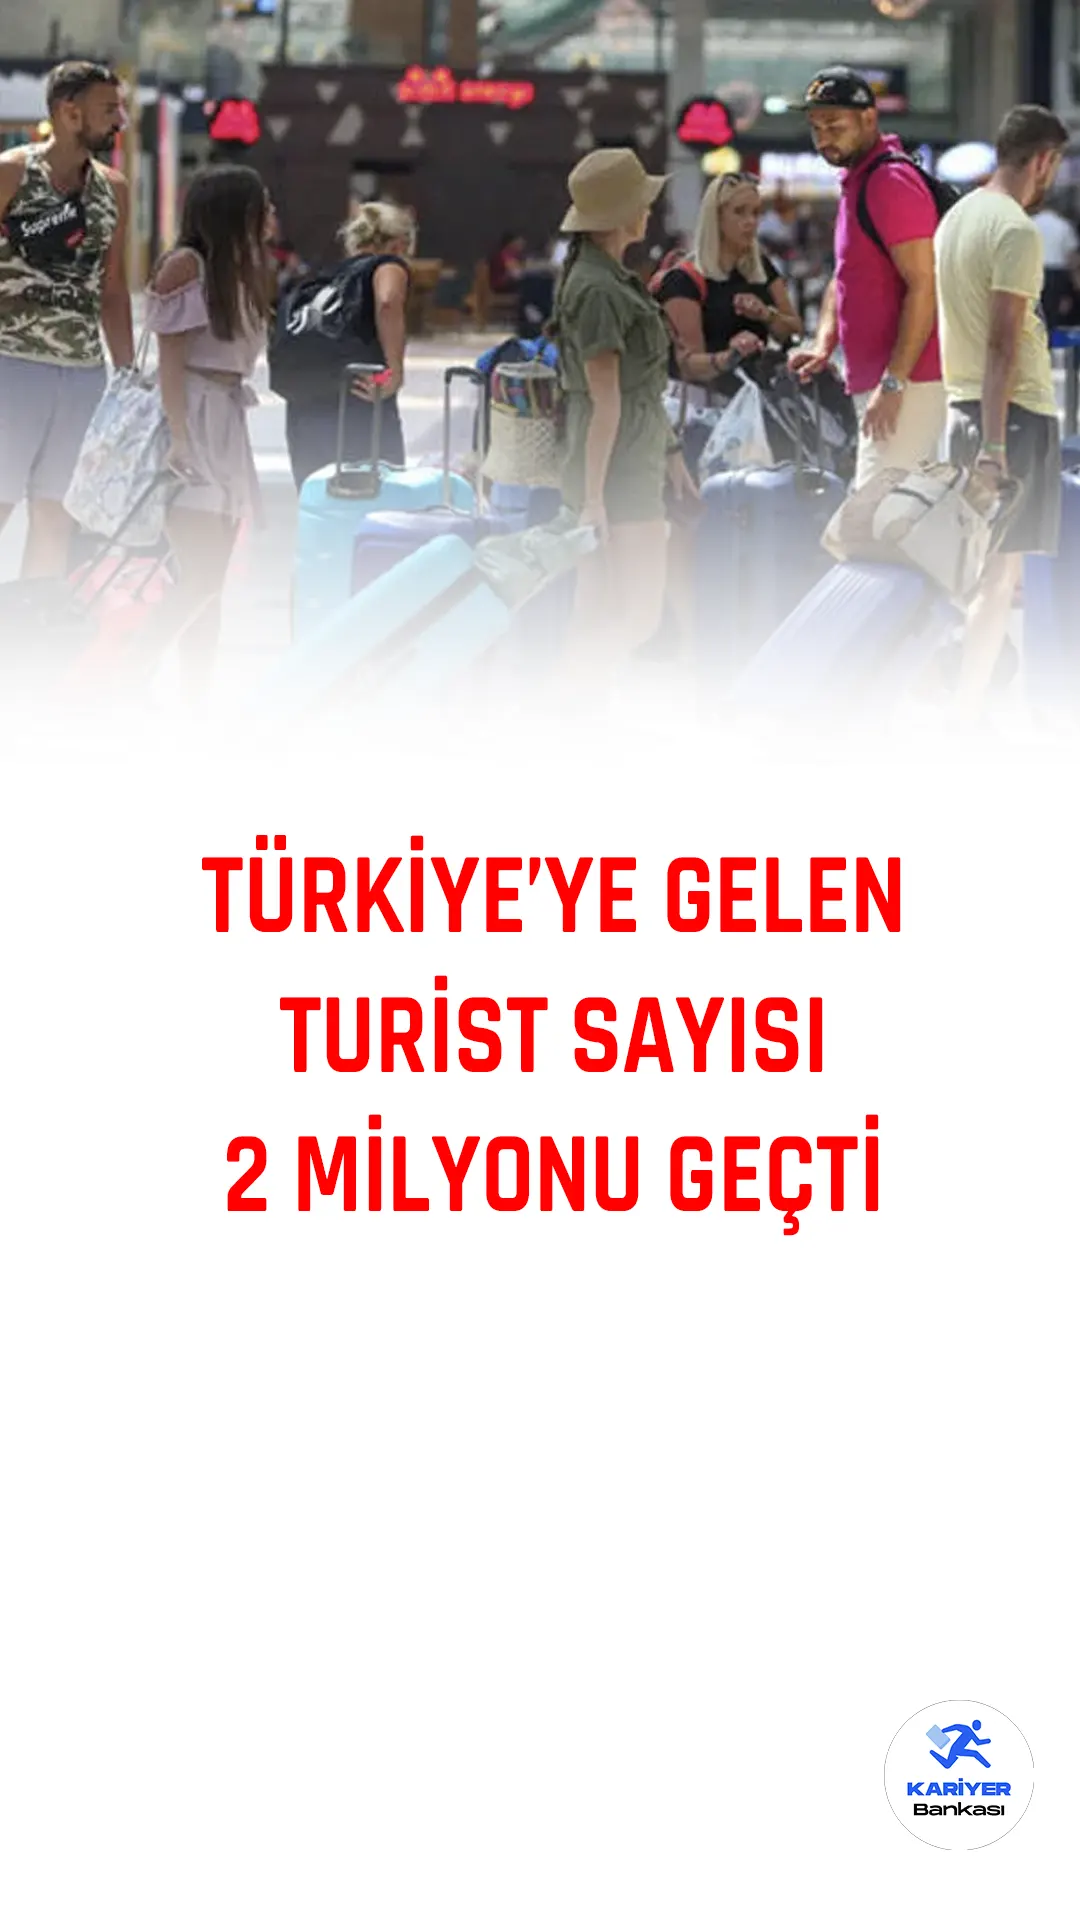 Kültür ve Turizm Bakanlığı'nın açıkladığı verilere göre, Türkiye'ye Ocak 2022'de gelen yabancı ziyaretçi sayısı, geçen yılın aynı ayına göre yüzde 56,51 artarak 2 milyon 5 bin 967 kişi oldu.